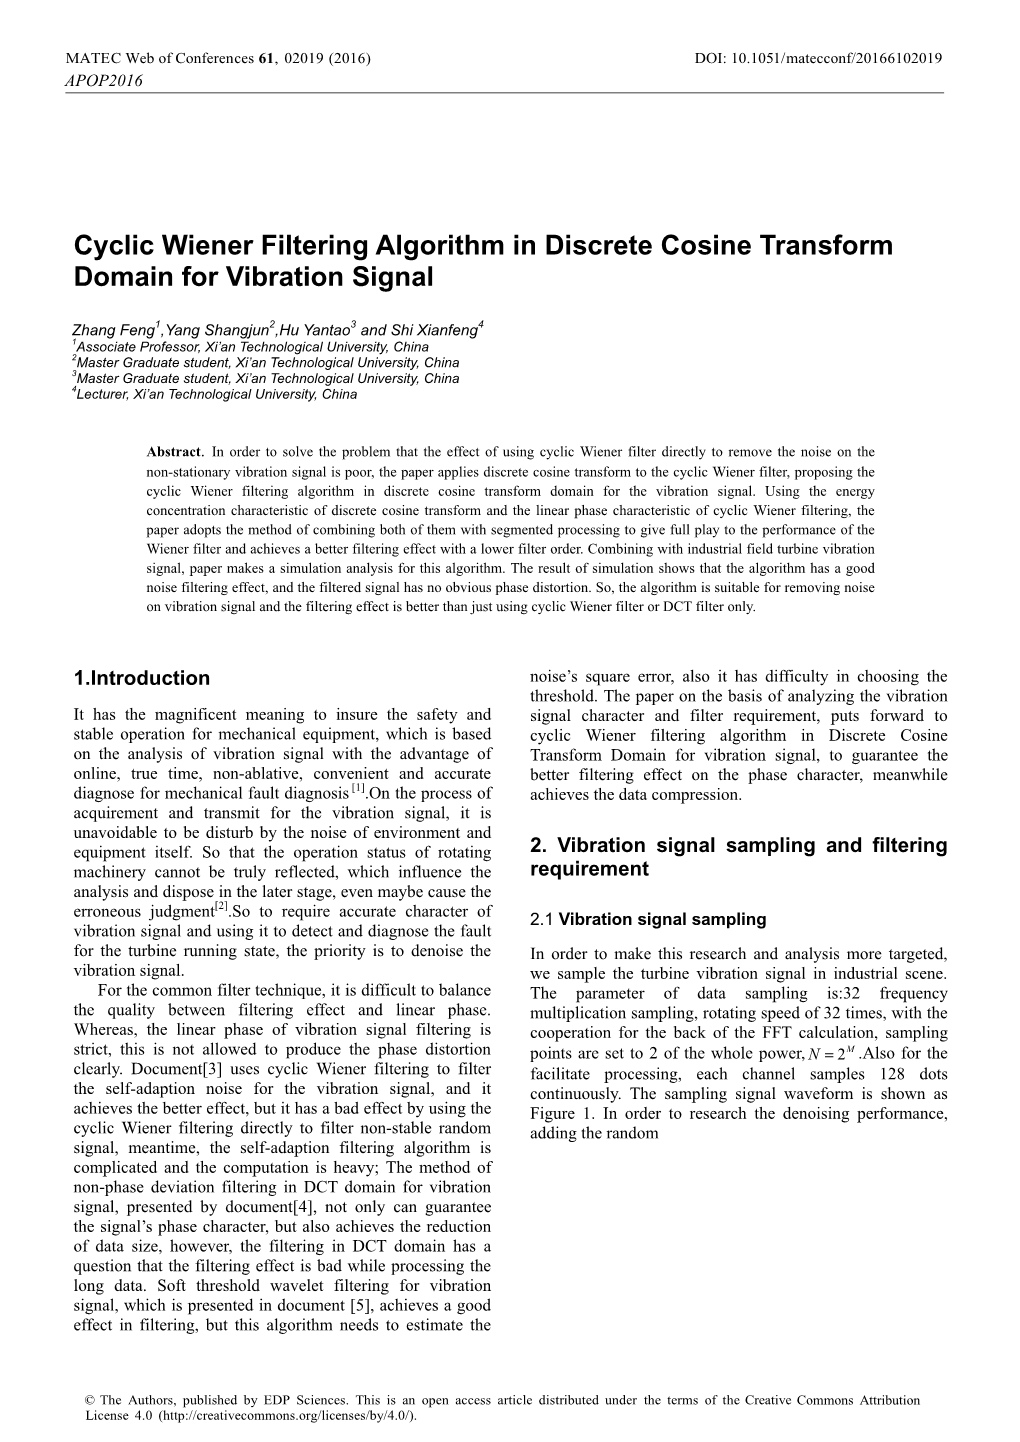 Cyclic Wiener Filtering Algorithm in Discrete Cosine Transform Domain for Vibration Signal